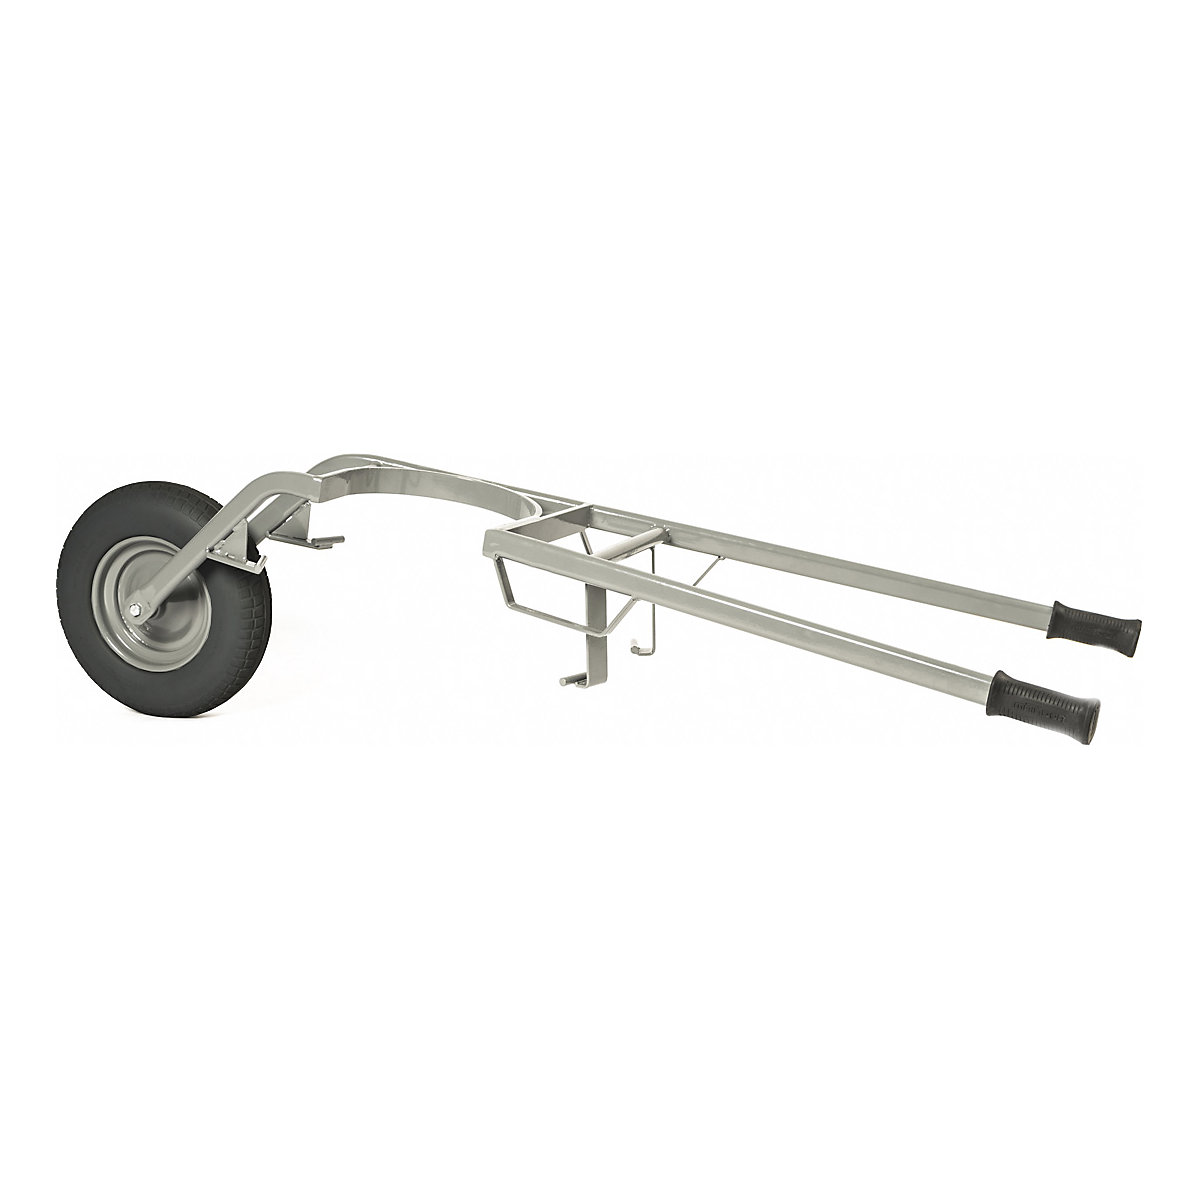 Mortar tub wheel barrow – MATADOR, max. load 250 kg, pneumatic tyres, 2+ items-1